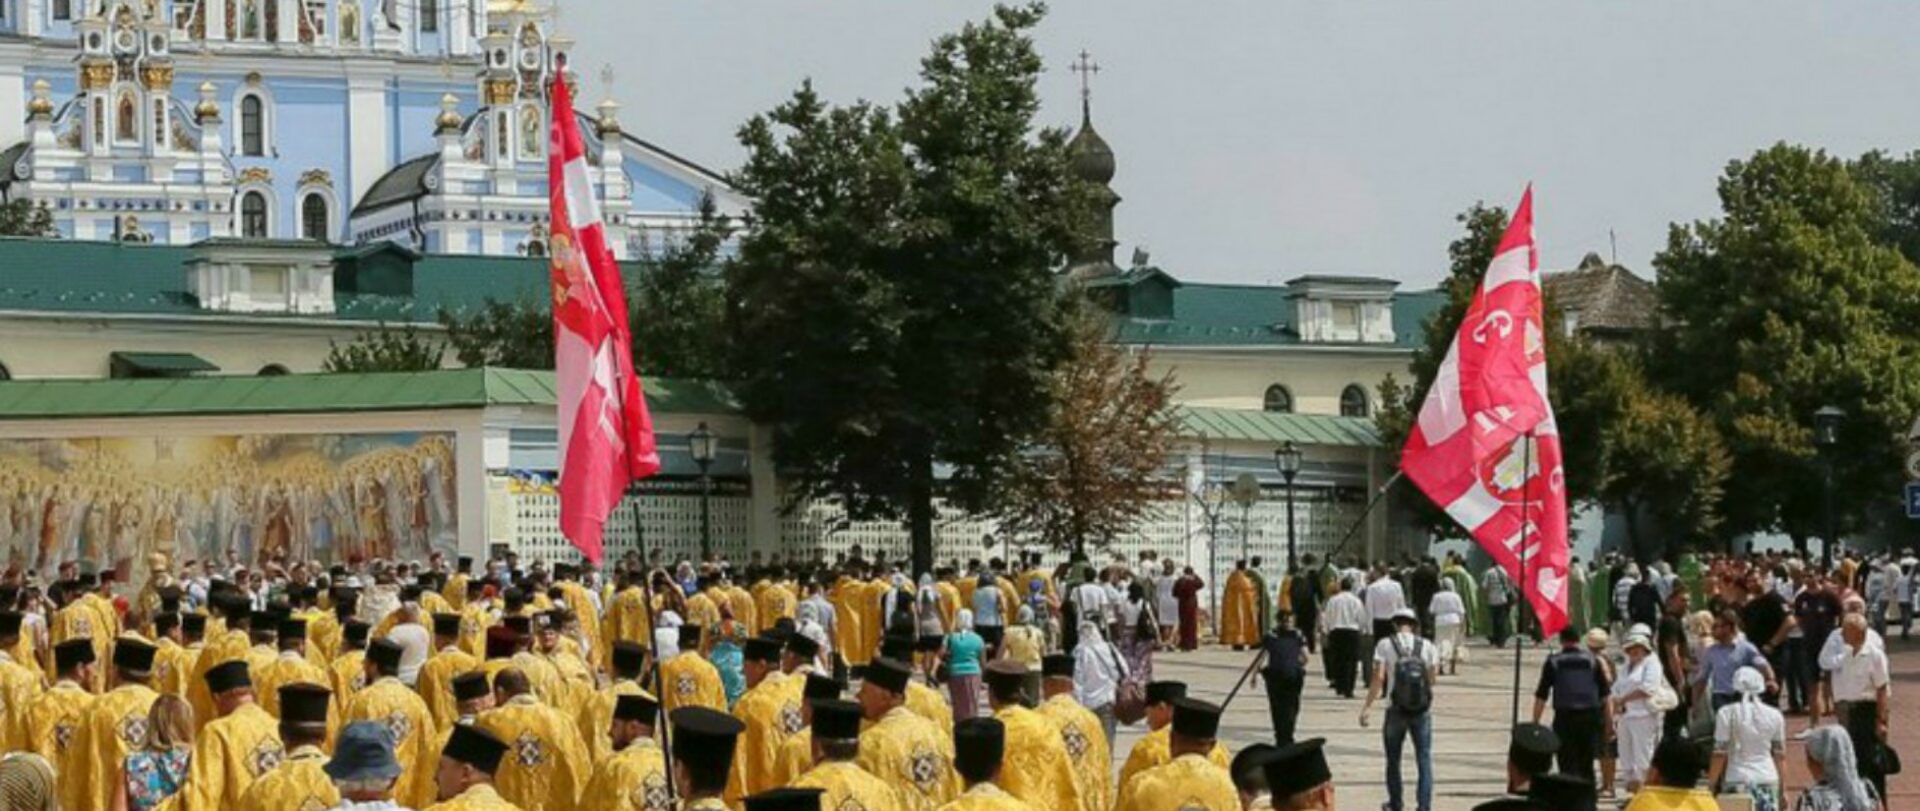 Kiev Cérémonie de l'Eglise orthodoxe d'Ukraine affiliée au Patriarcat de Moscou | Photo: twitter